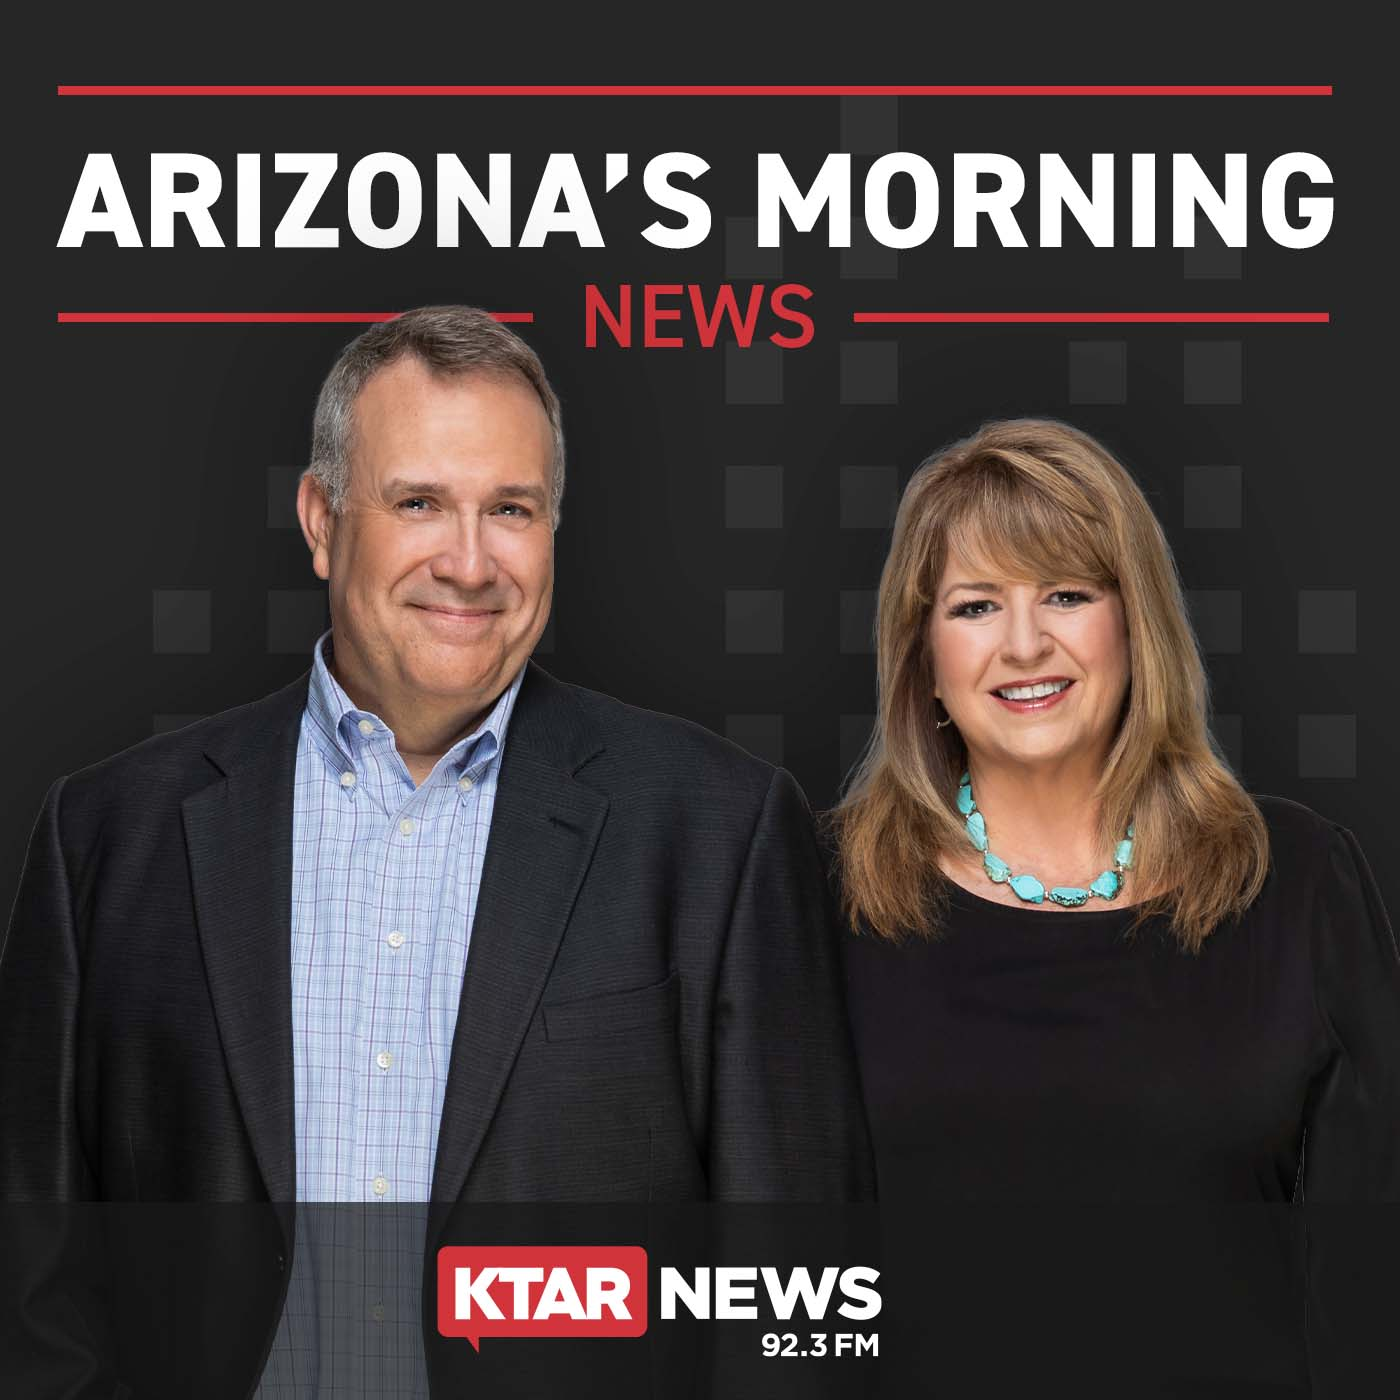 Is Arizona seeing another Coronavirus surge?